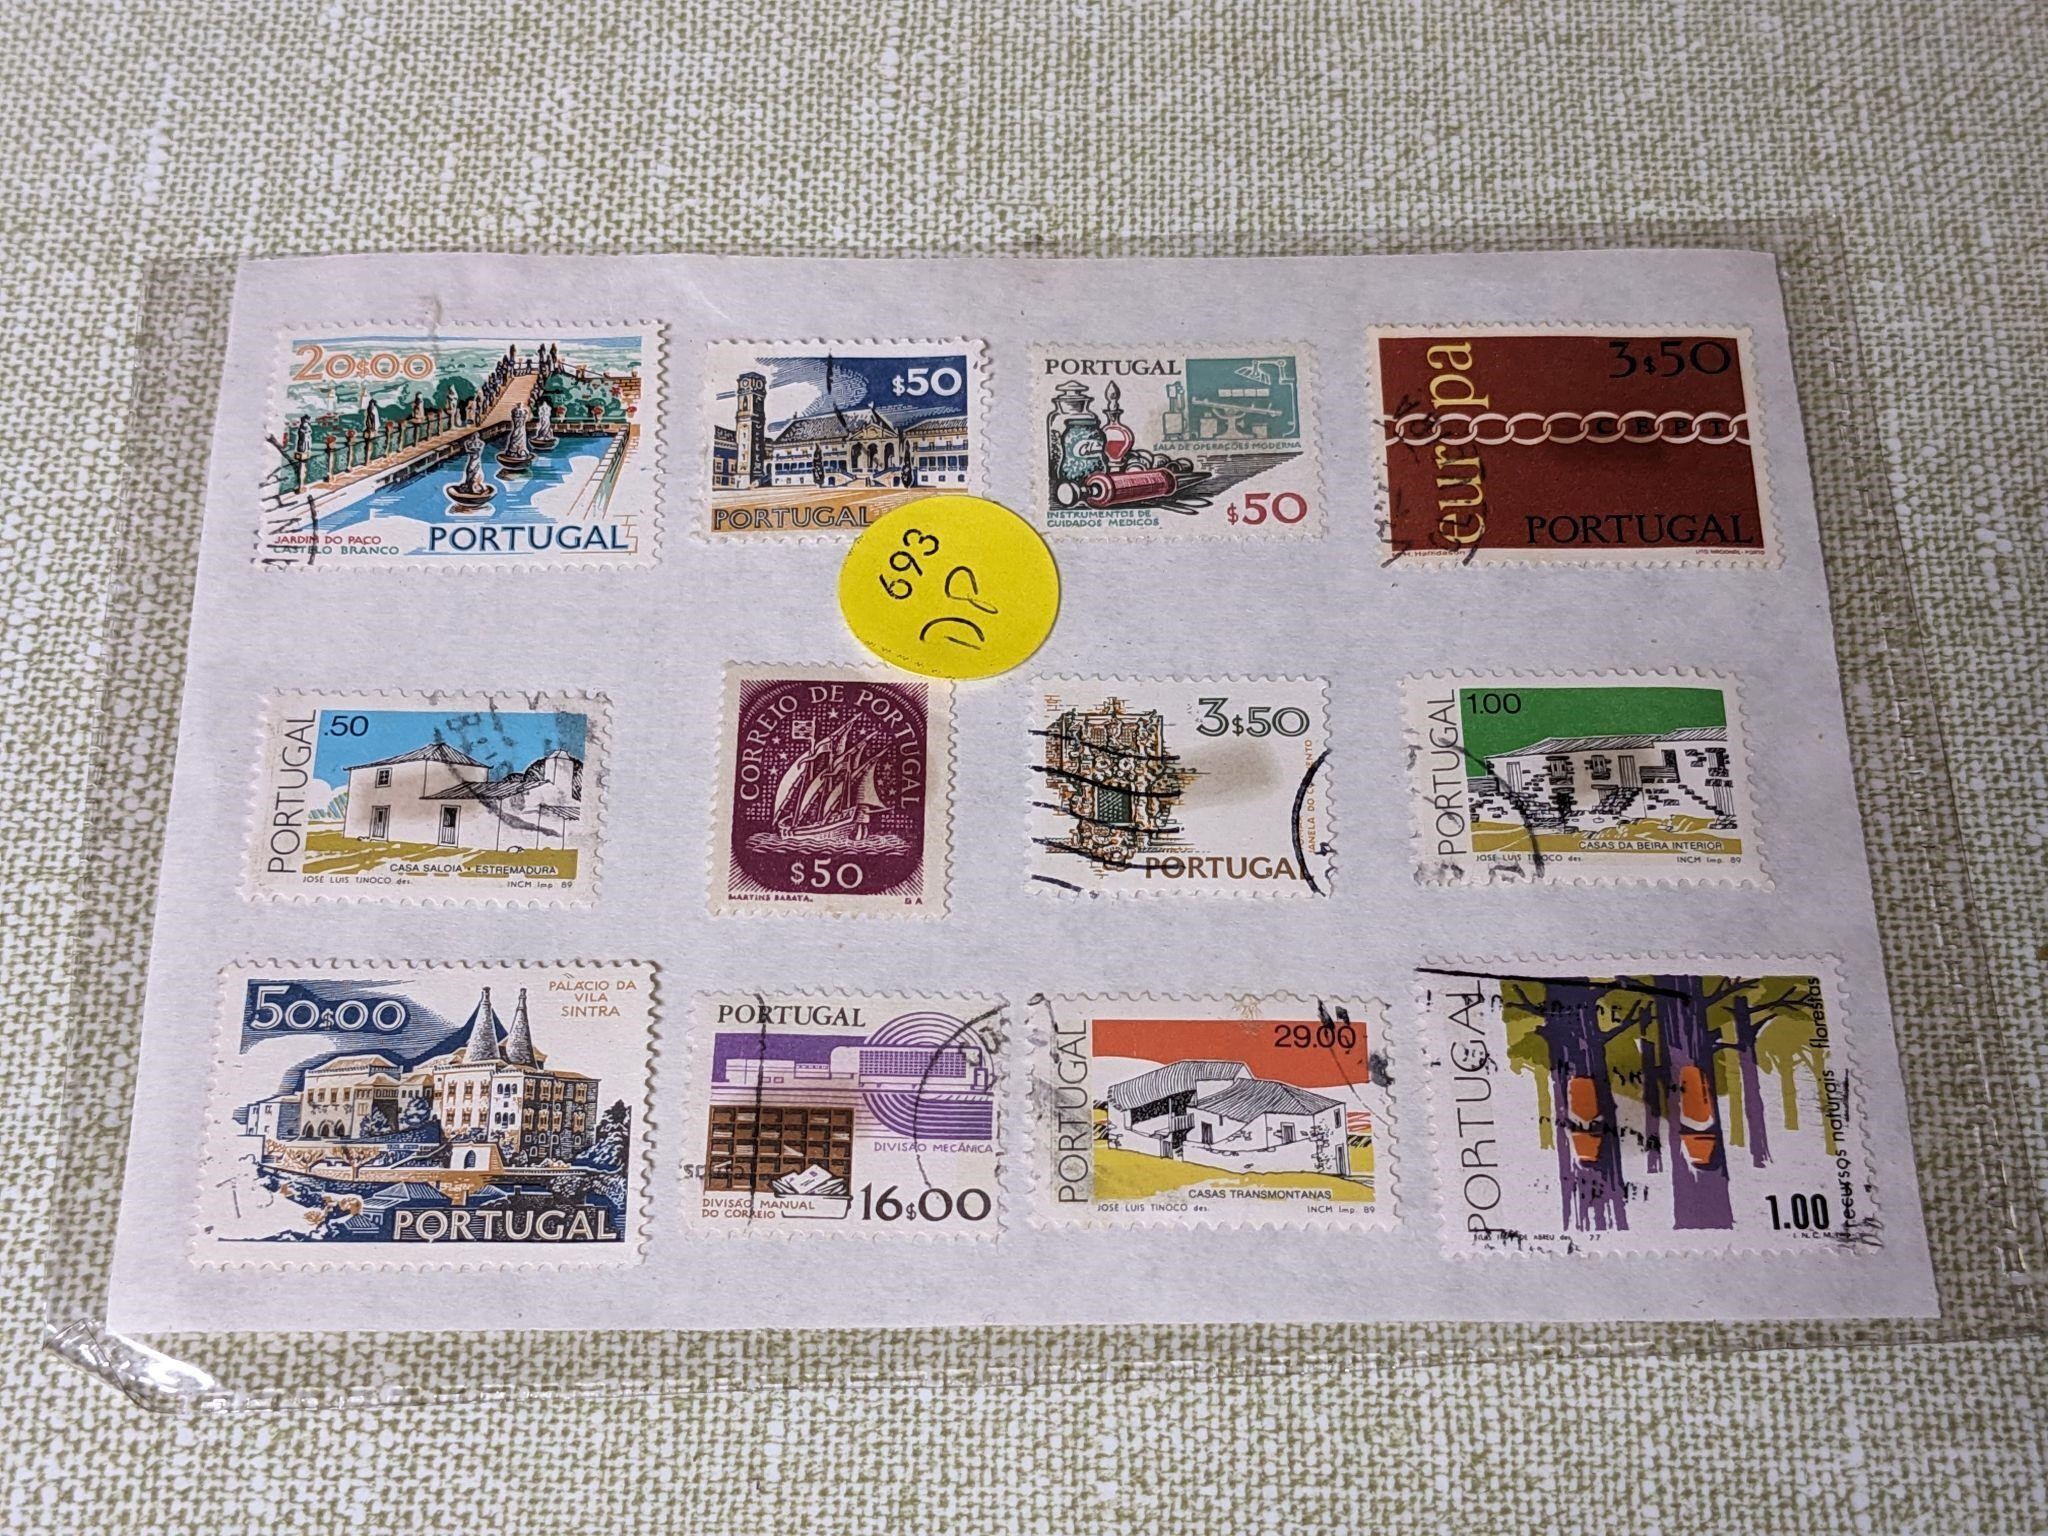 VTG Portugal Stamp Sheet